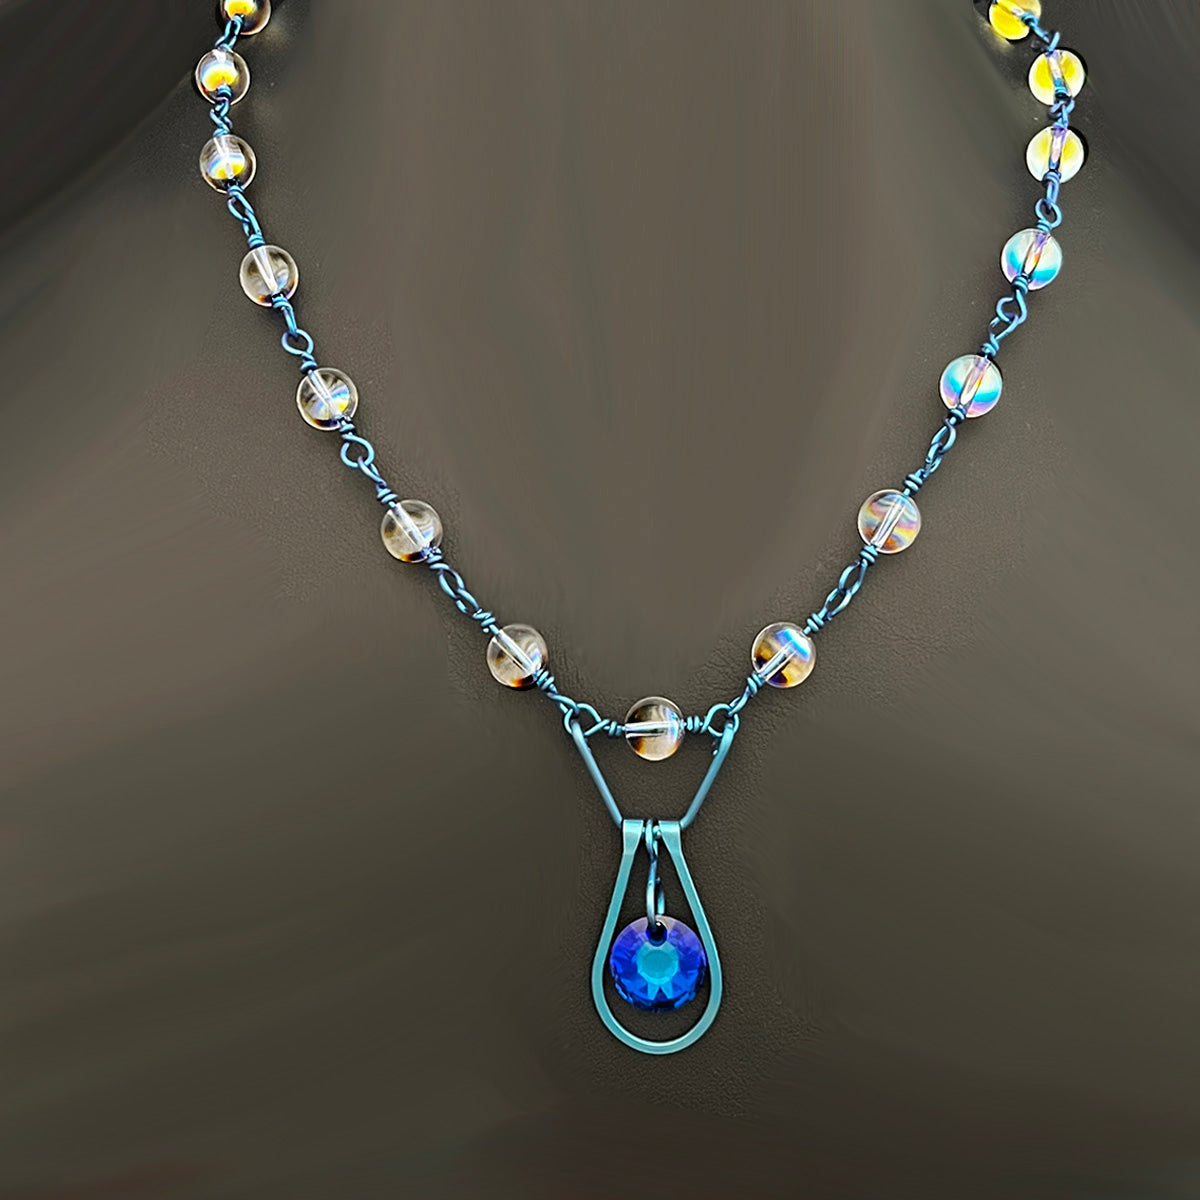 Bead Link Necklace w/ Teardrop Pendant